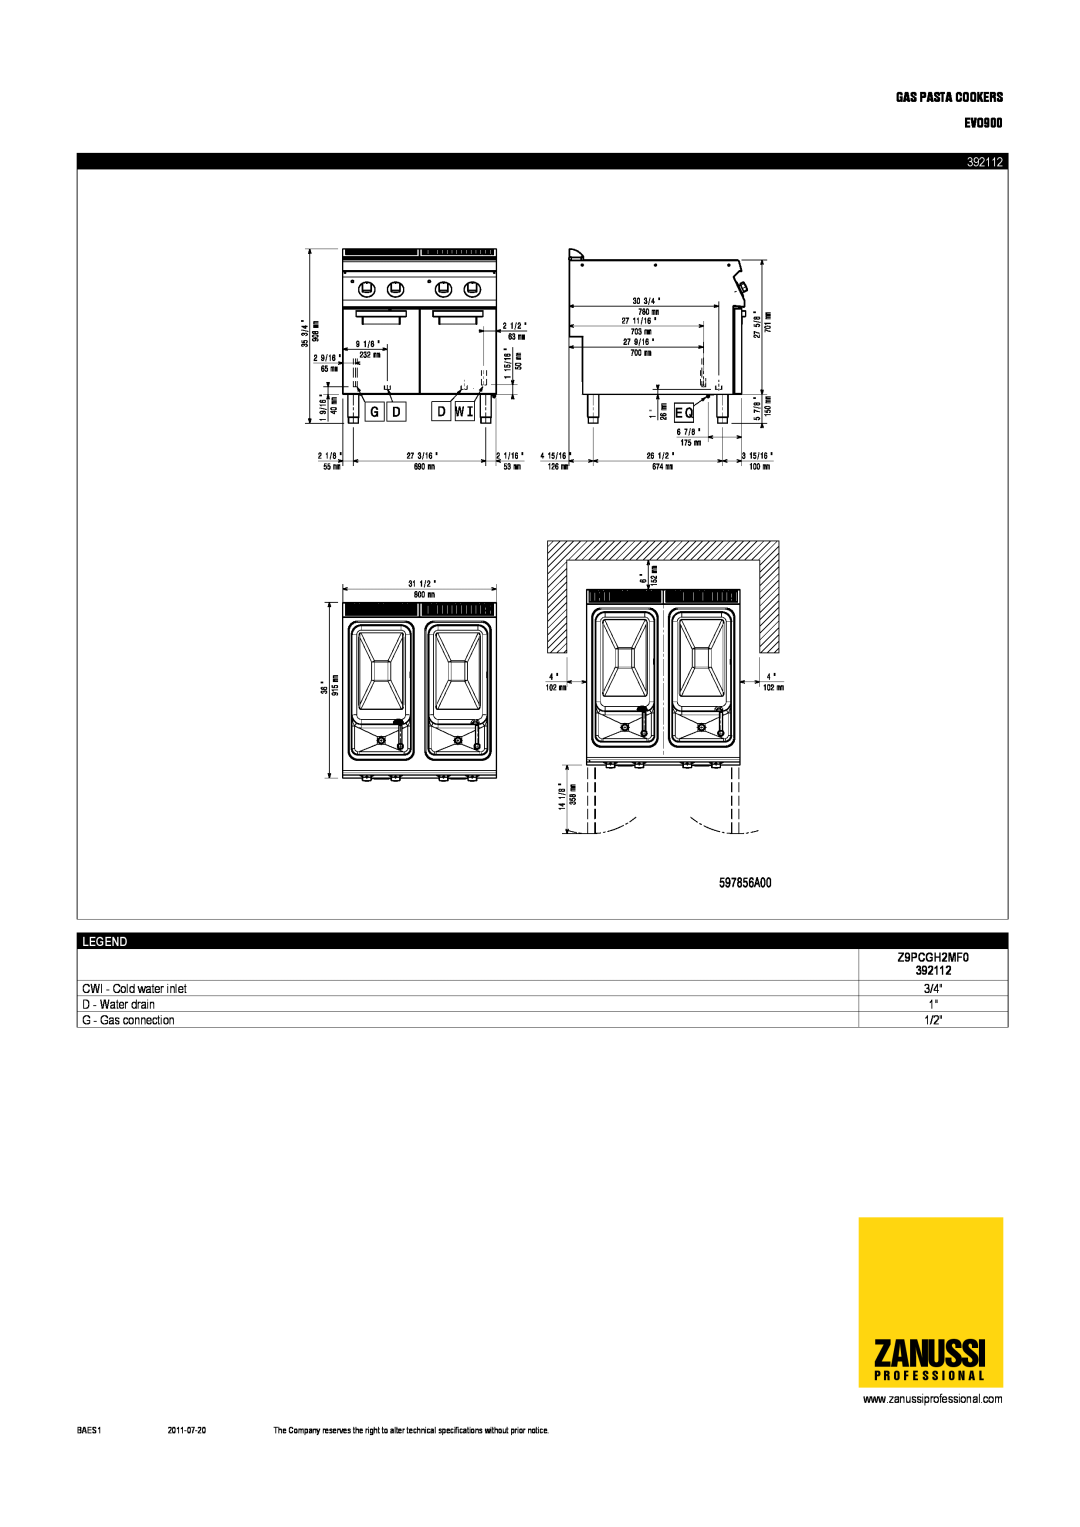 Zanussi EVO900 dimensions Zanussi, 392112, Z9PCGH2MF0, BAES1, 2011-07-20 